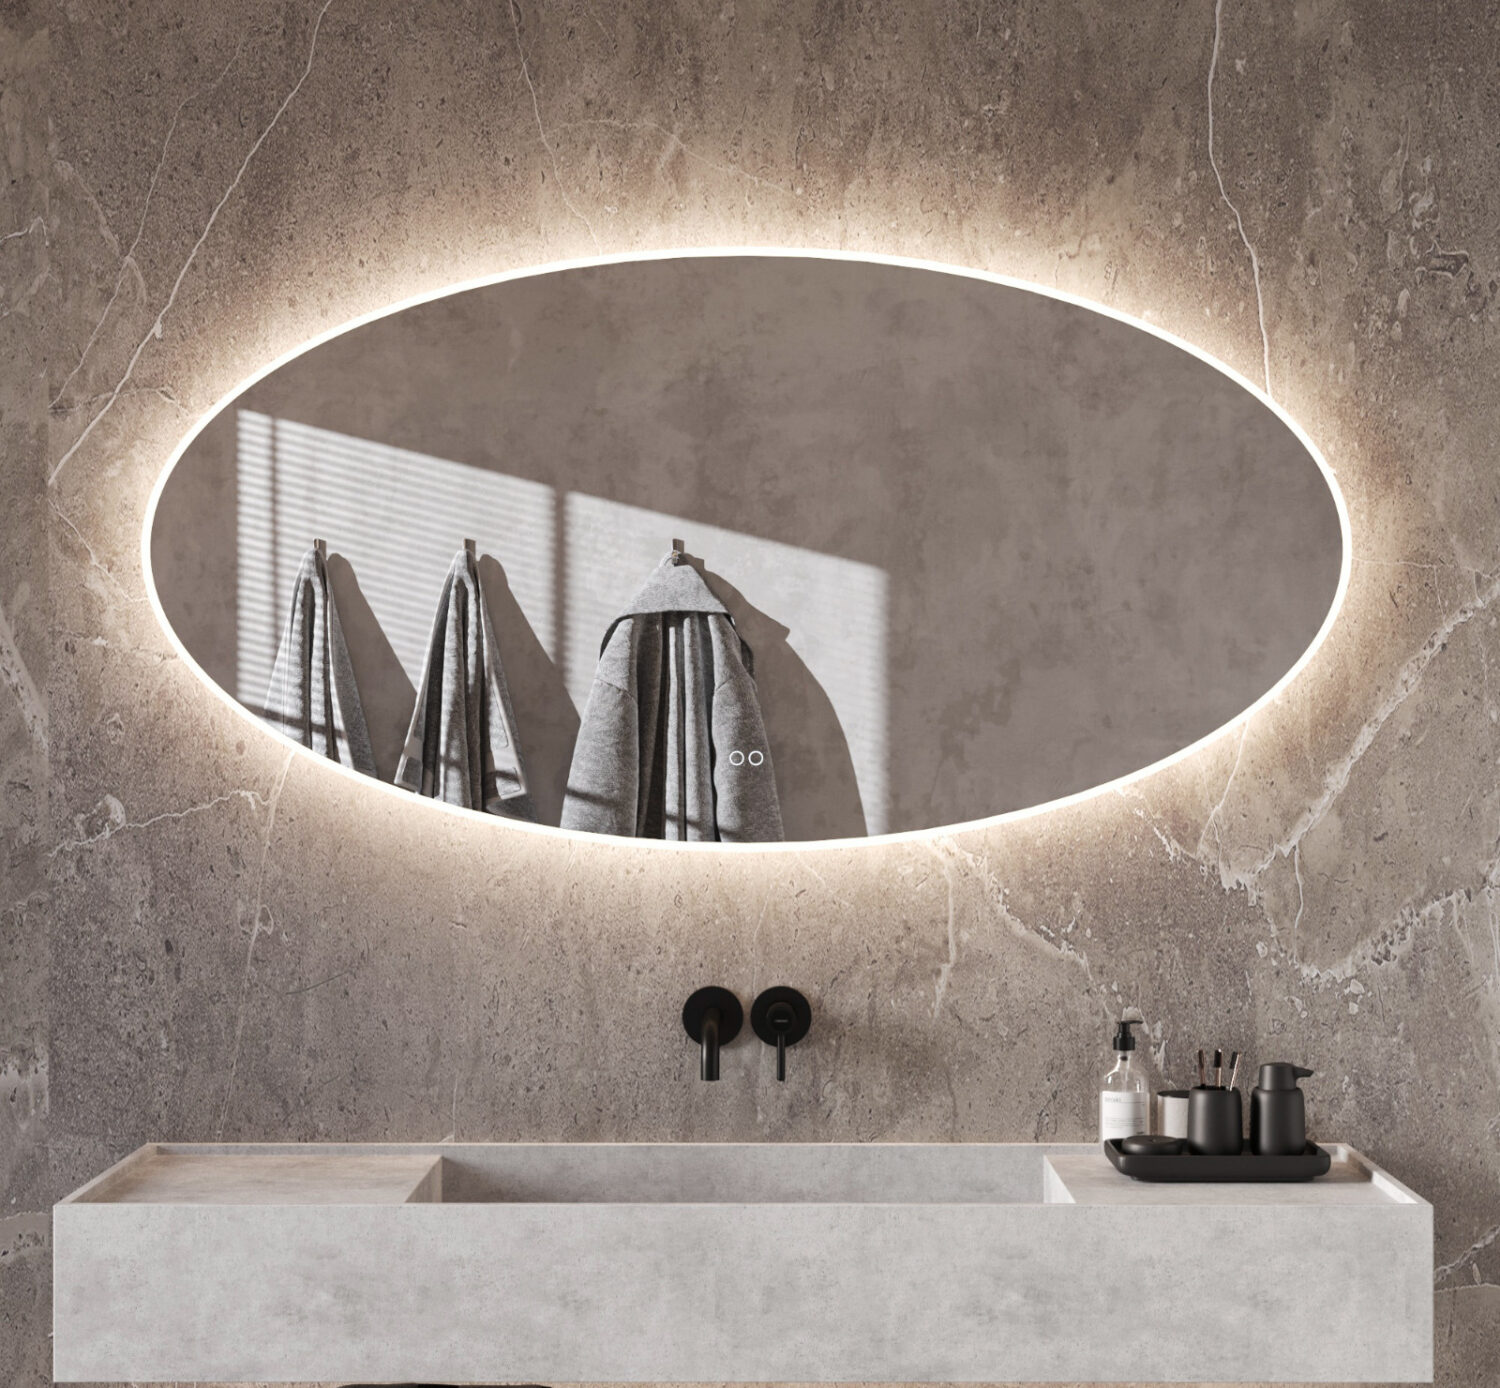 Fraaie ovale badkamerspiegel met verlichting, spiegelverwarming en handige dubbele touch schakelaar met dimfunctie en kleurenwissel